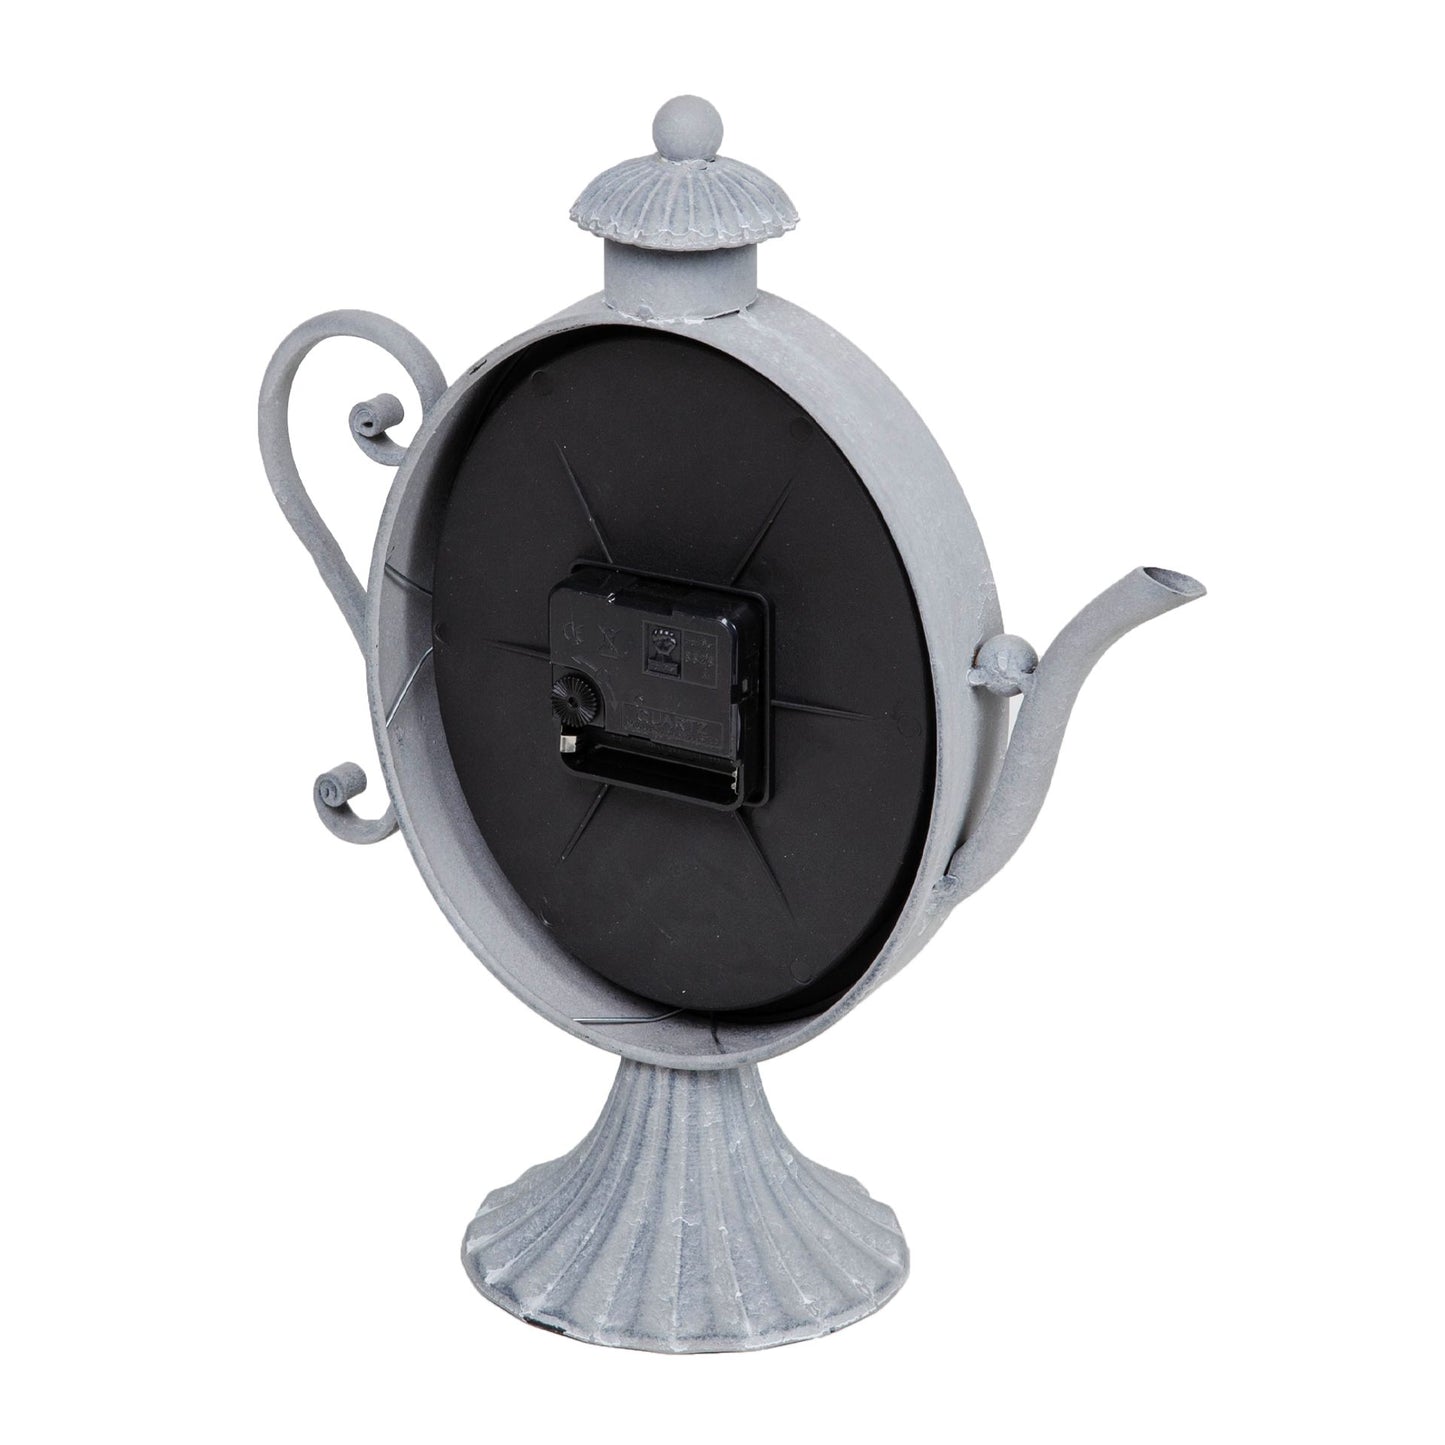 Hometime Metal Mantel Clock - Teapot